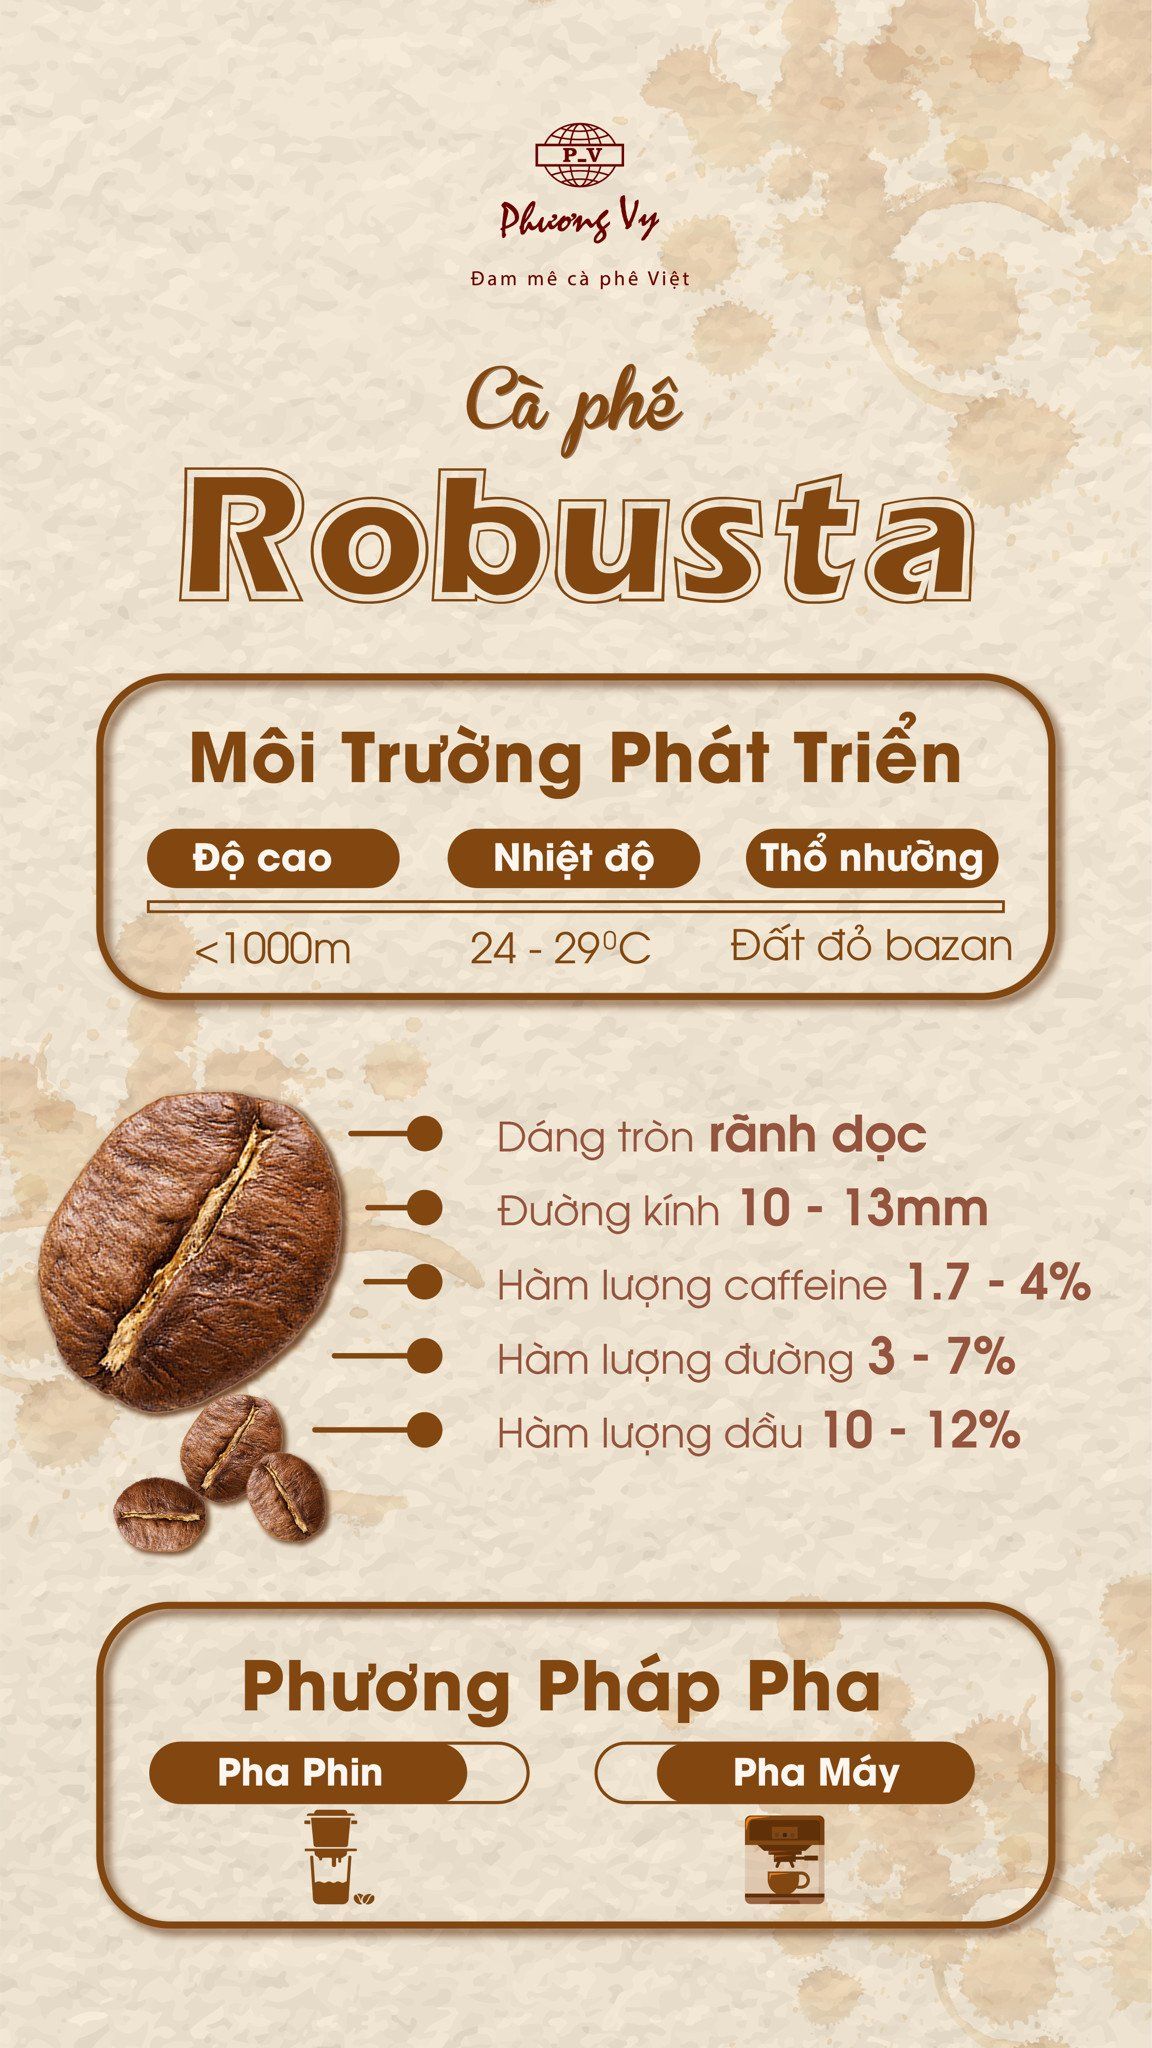 Cà phê robusta và điểm đặc trưng